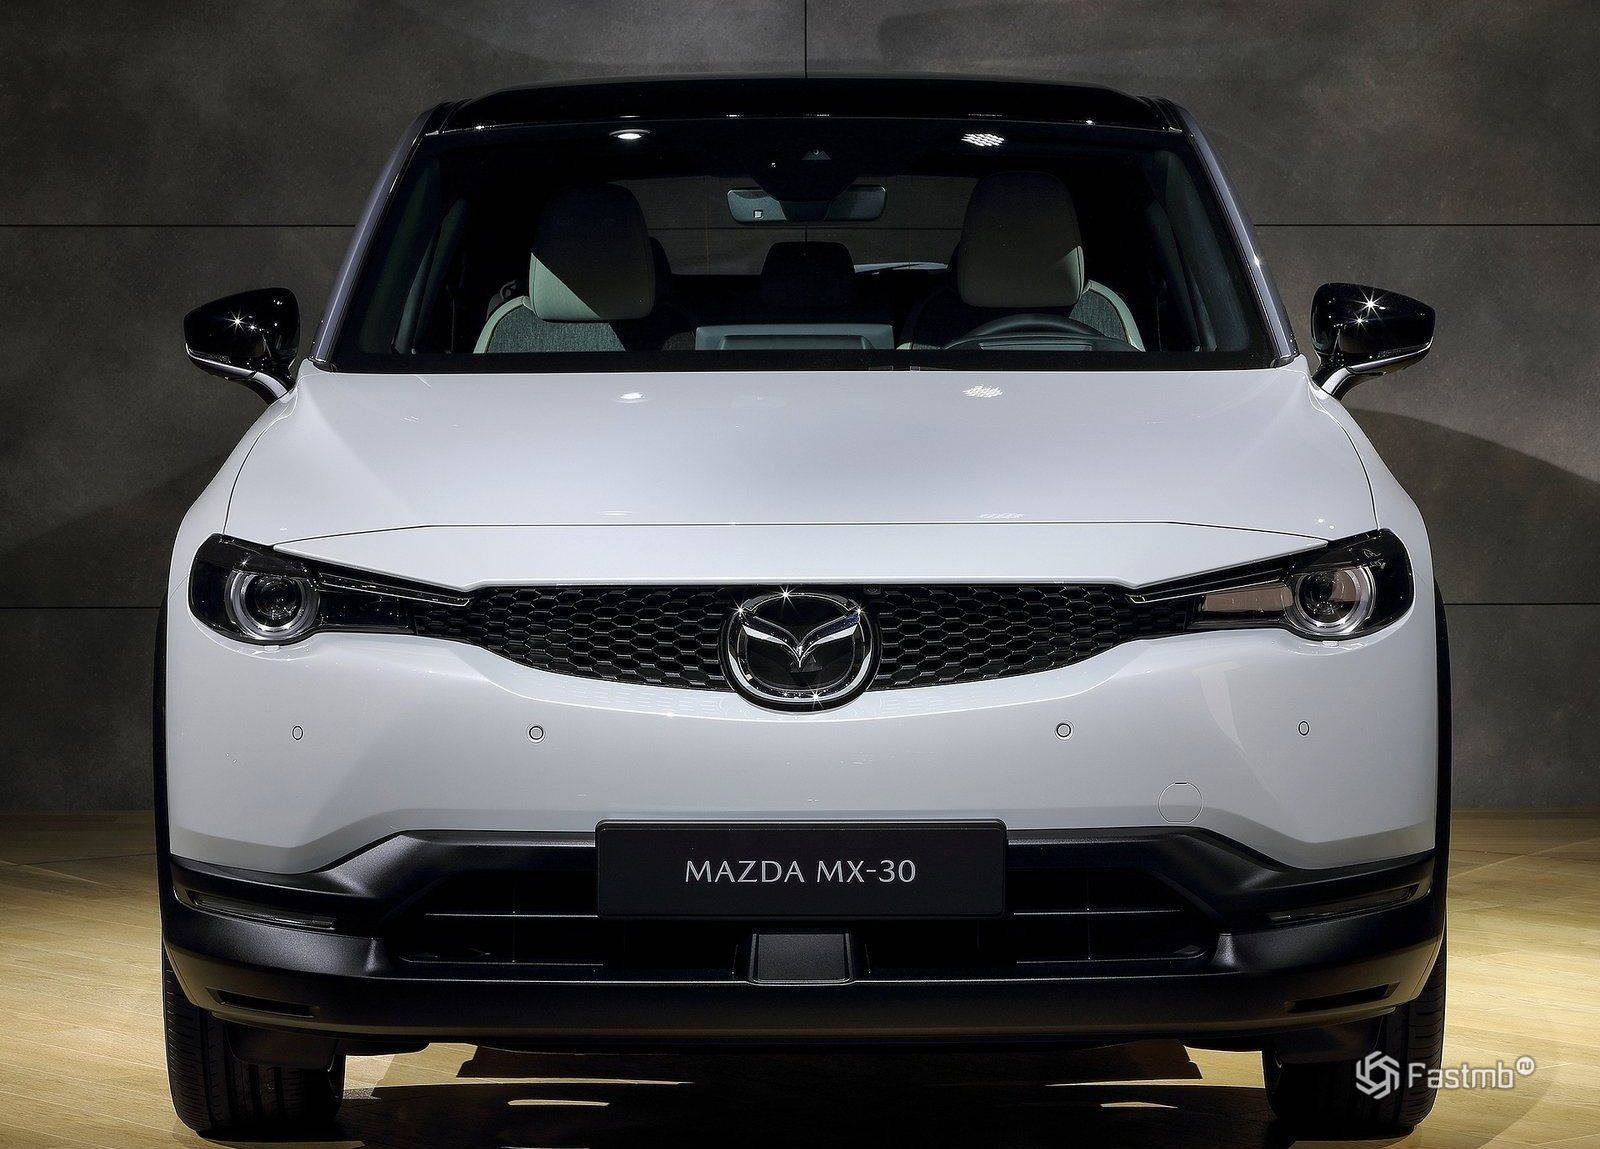 Mazda mx-30 стал первым в мире электрокаром с роторным двигателем - 4pda